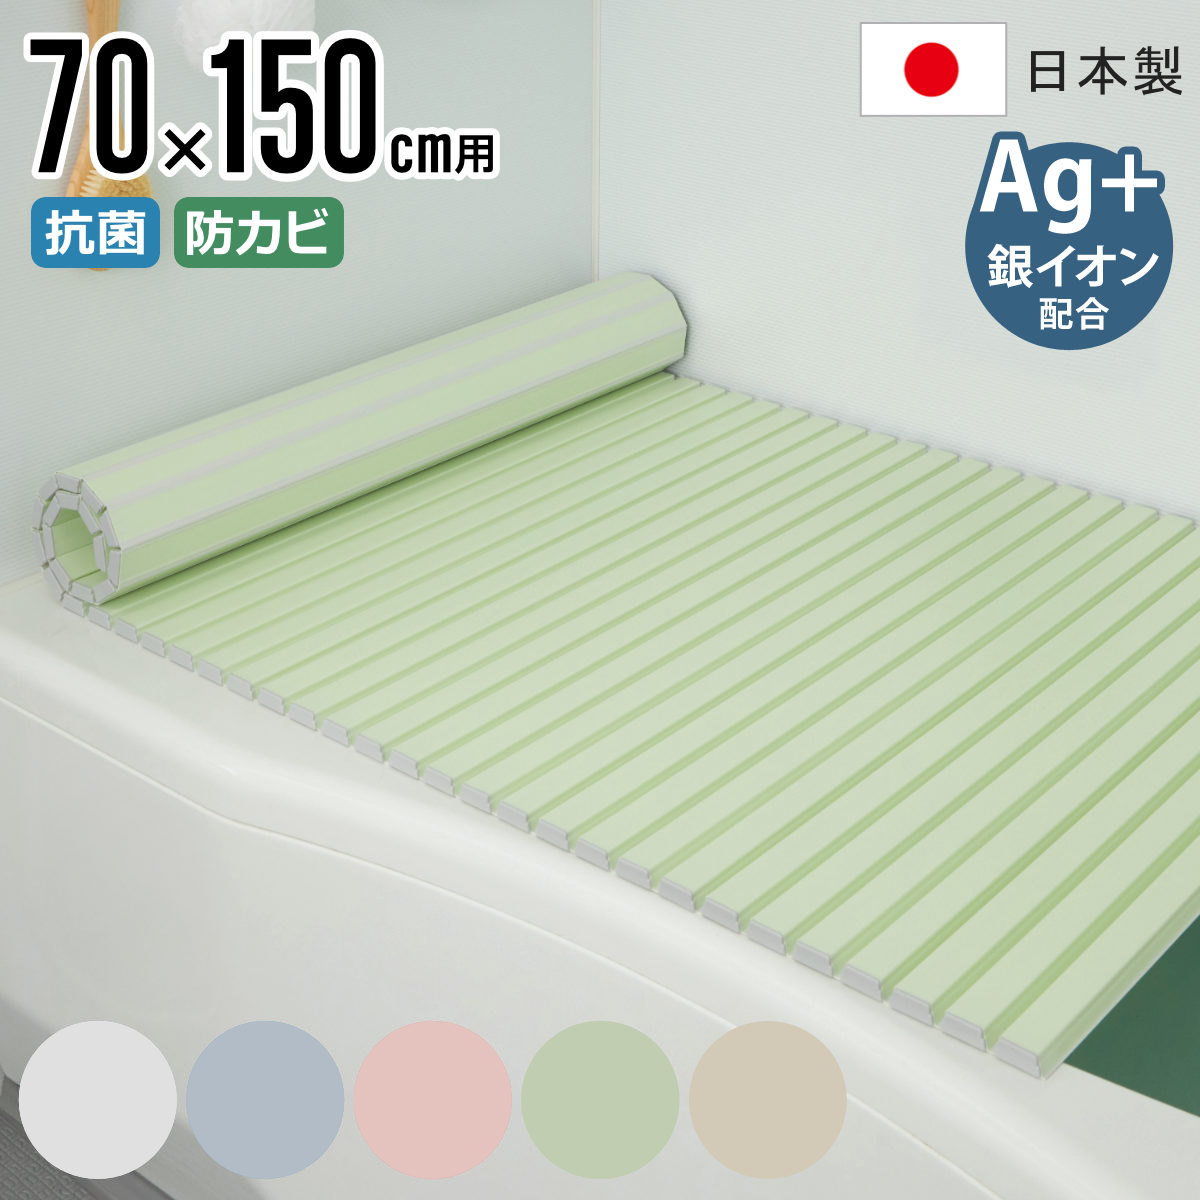 風呂ふた シャッター Ag抗菌 日本製 70×150cm 用 M-15 実寸70×152cm